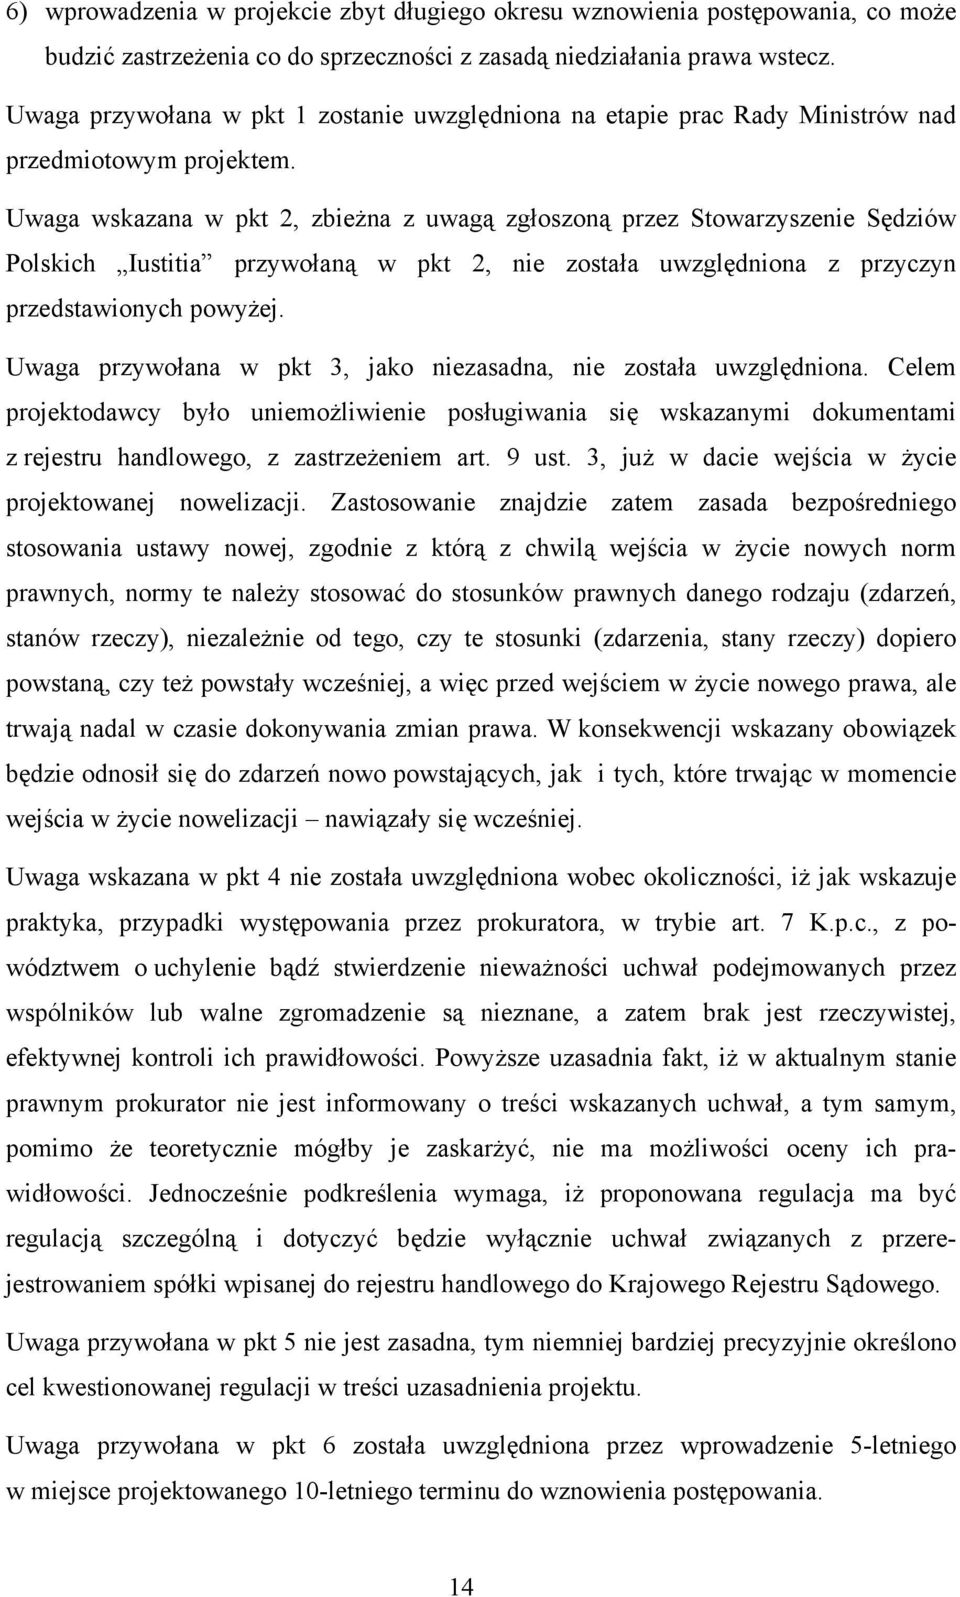 Uwaga wskazana w pkt 2, zbieżna z uwagą zgłoszoną przez Stowarzyszenie Sędziów Polskich Iustitia przywołaną w pkt 2, nie została uwzględniona z przyczyn przedstawionych powyżej.